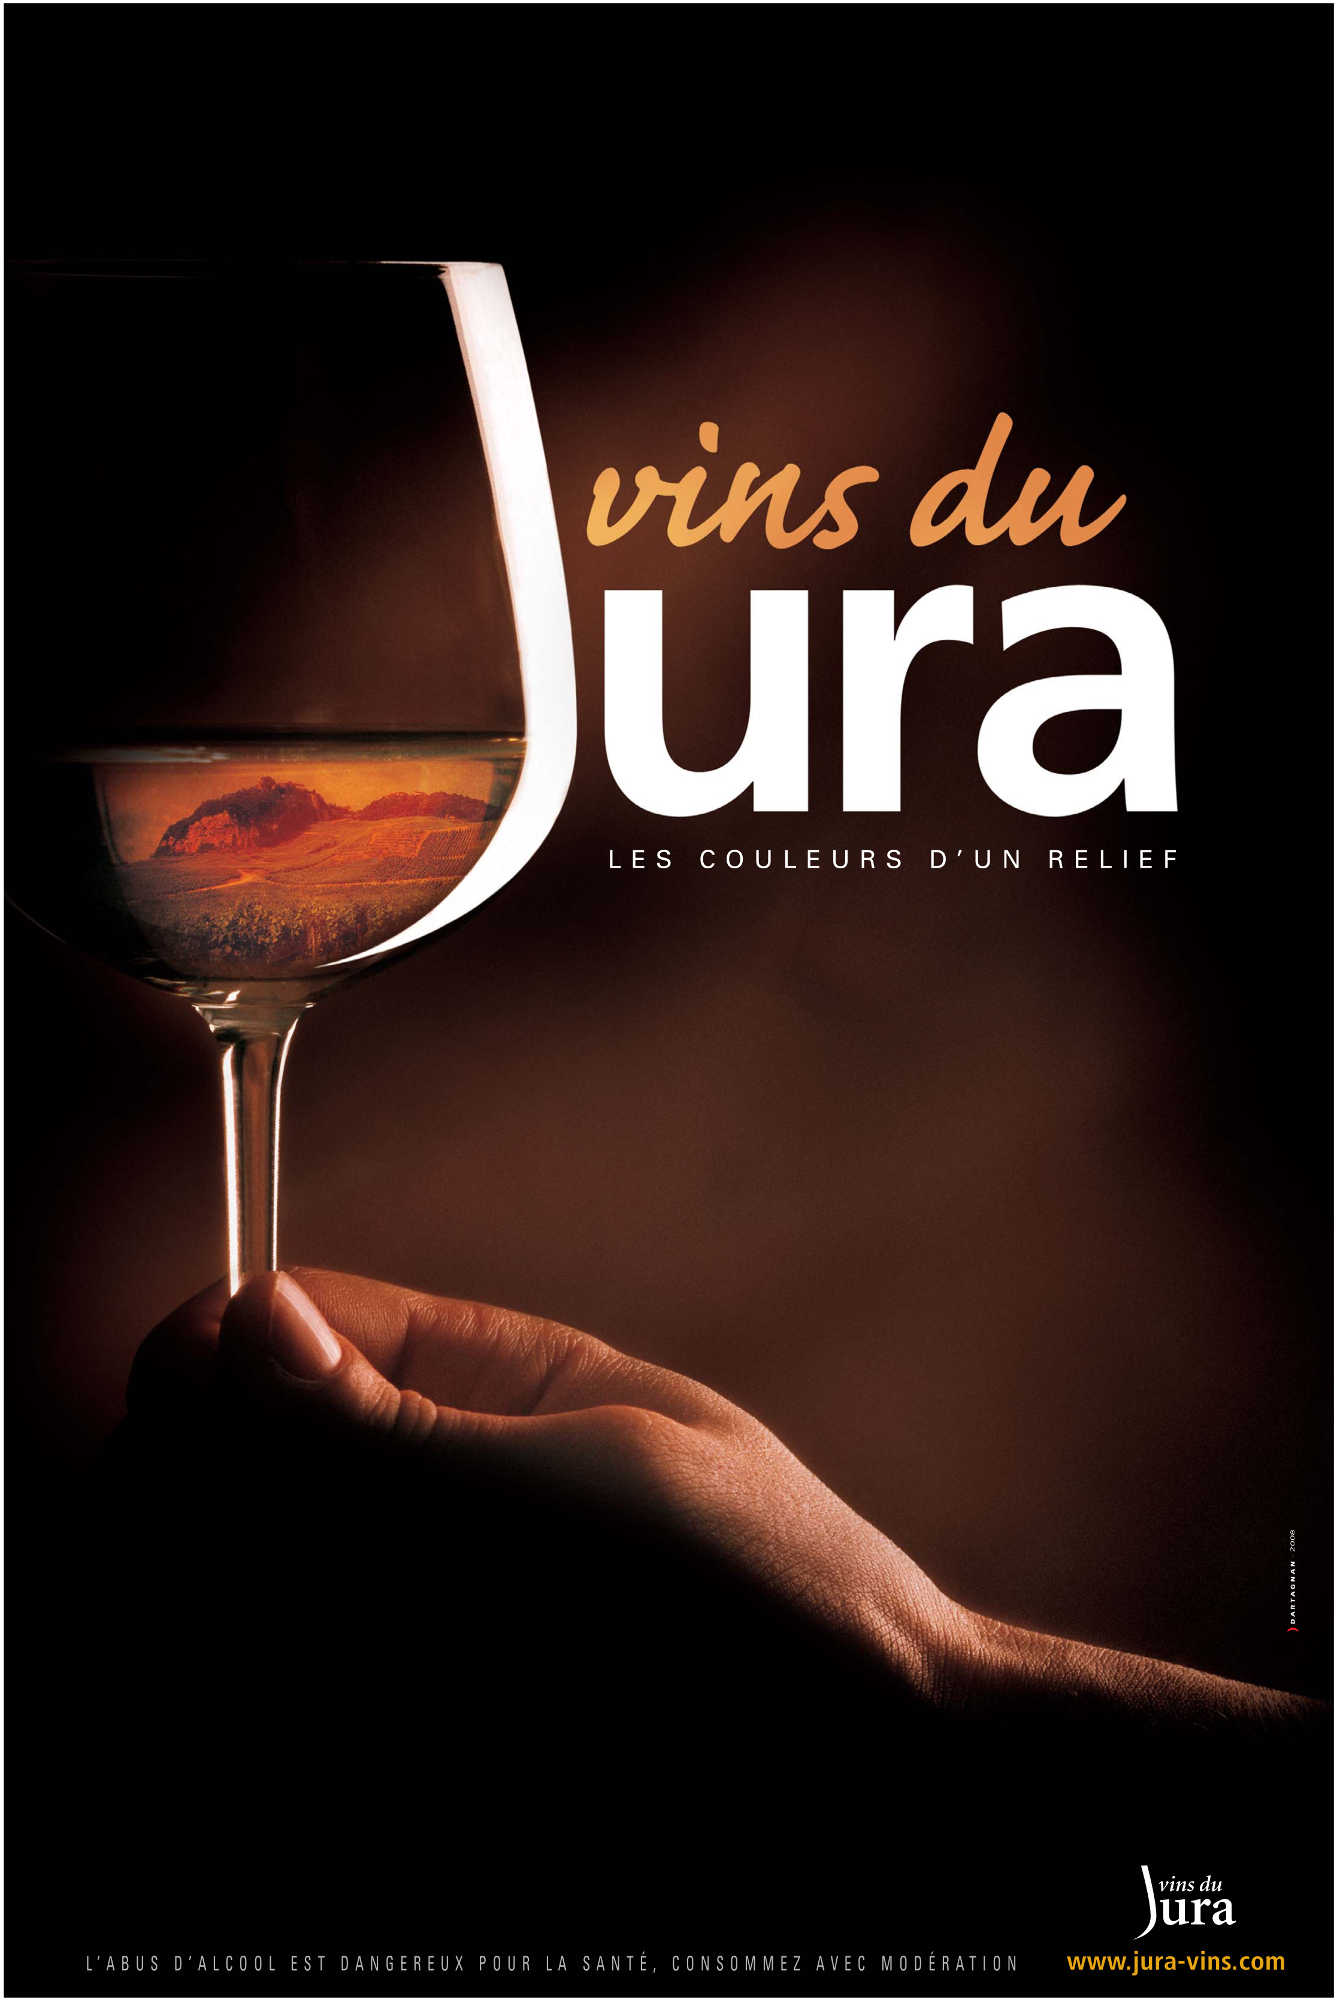 vin jaune côtes du jura - Domaine Cartaux Bougaud